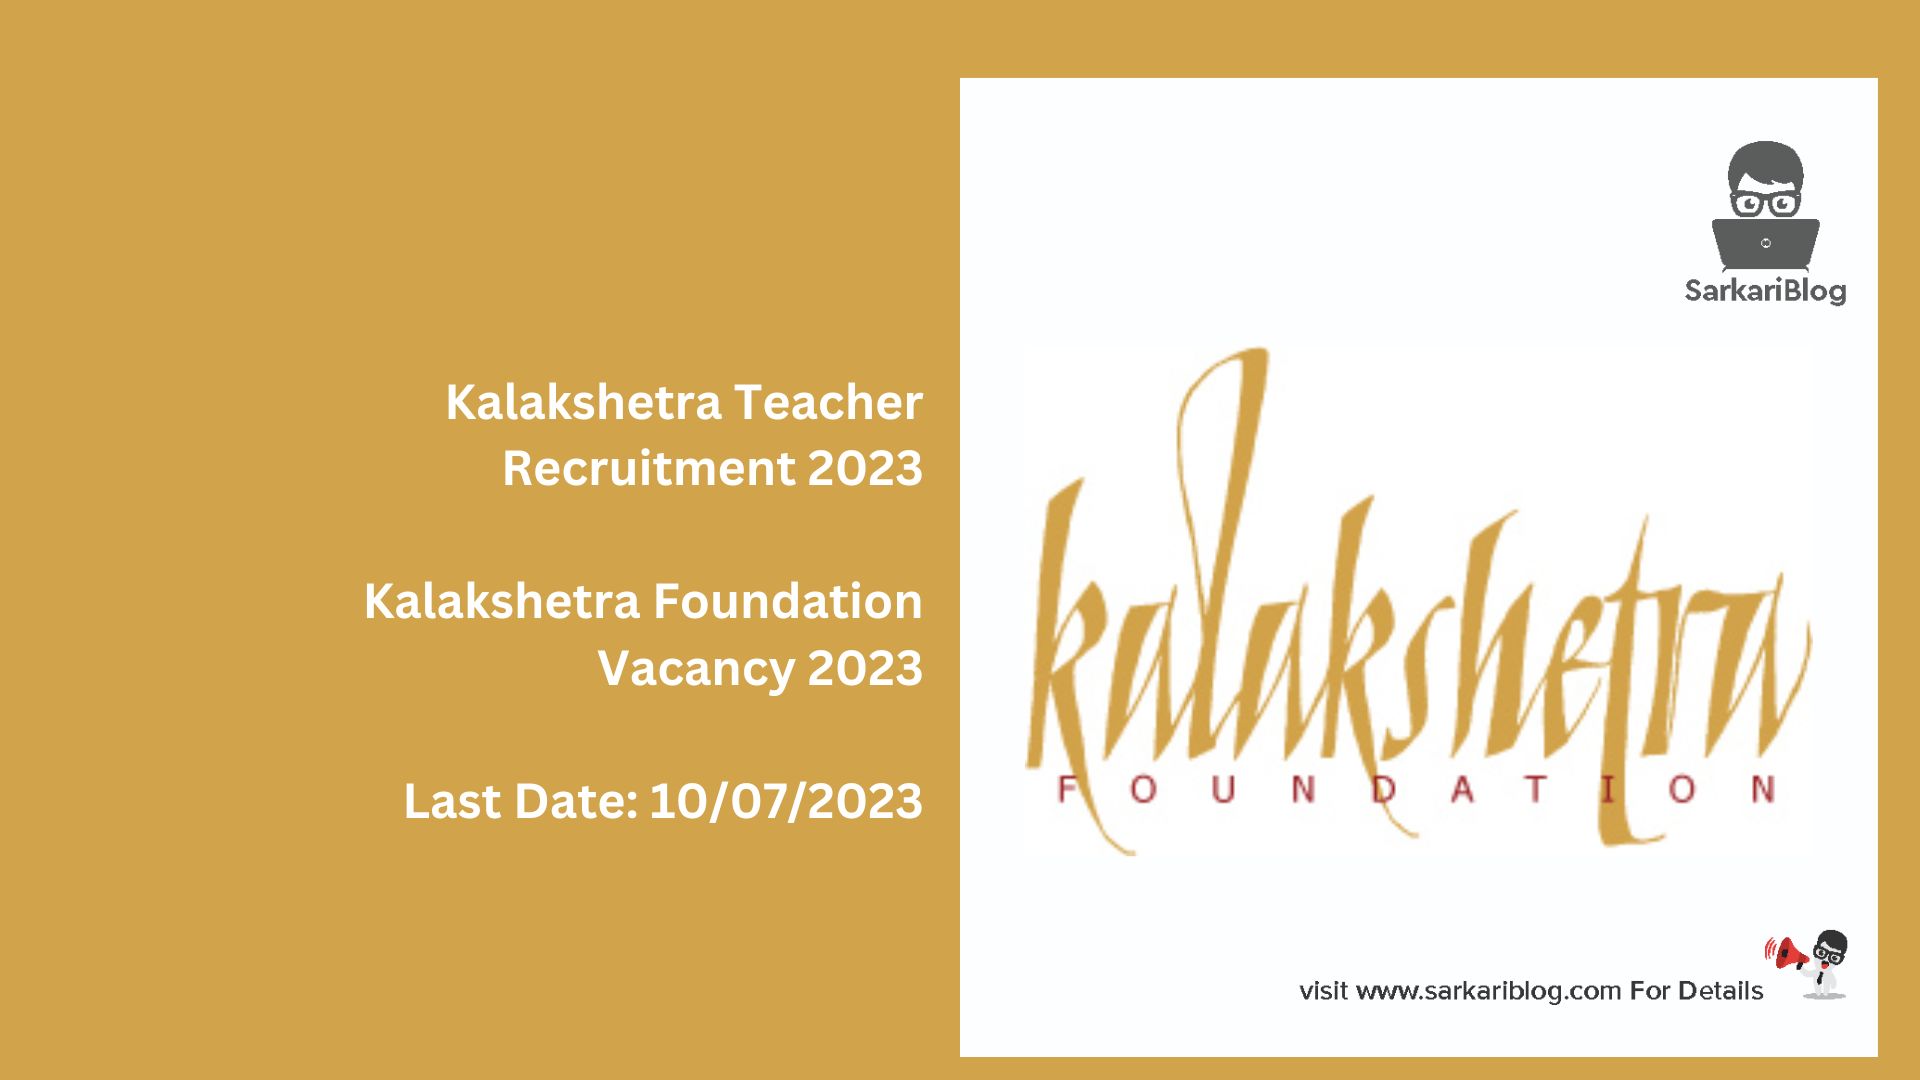 Kalakshetra Teacher Recruitment 2023